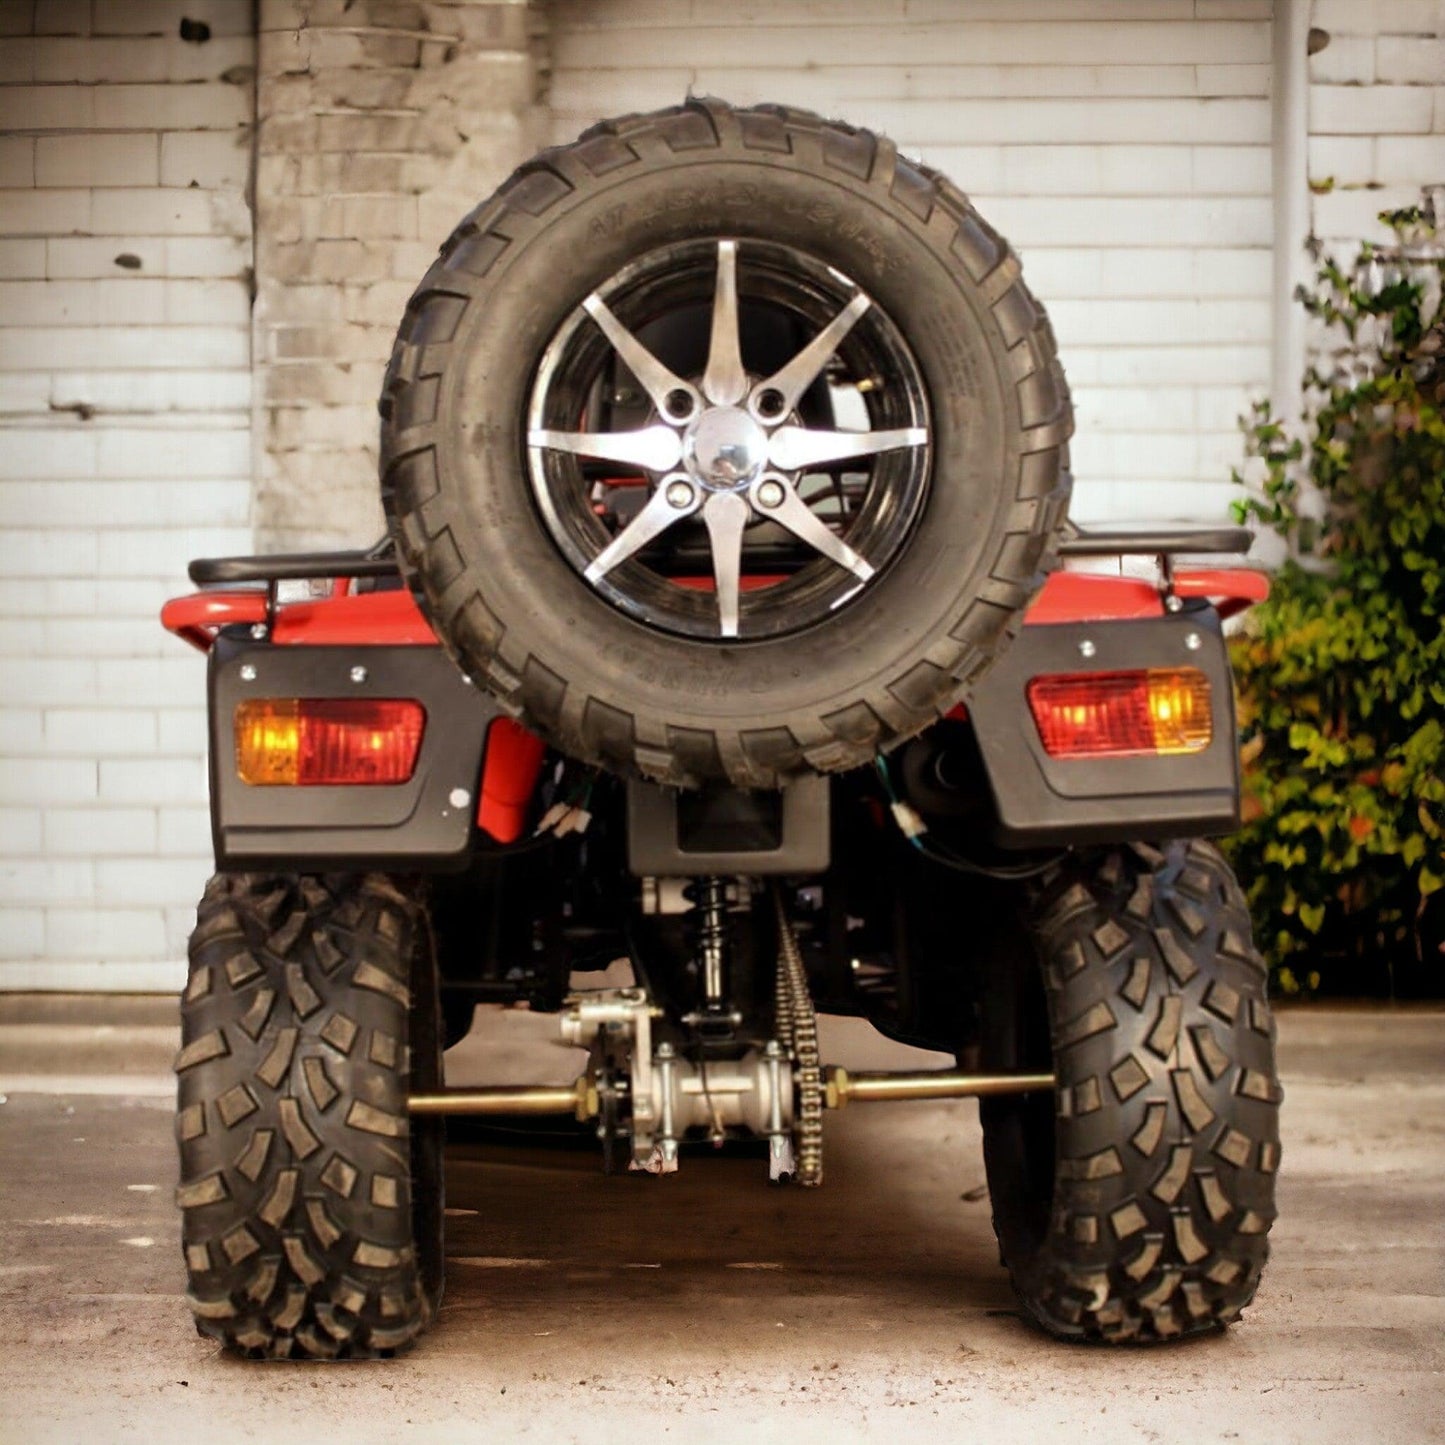 PATOYS | Super Hunk Atv 250cc (Red) ATVs & UTVs PATOYS